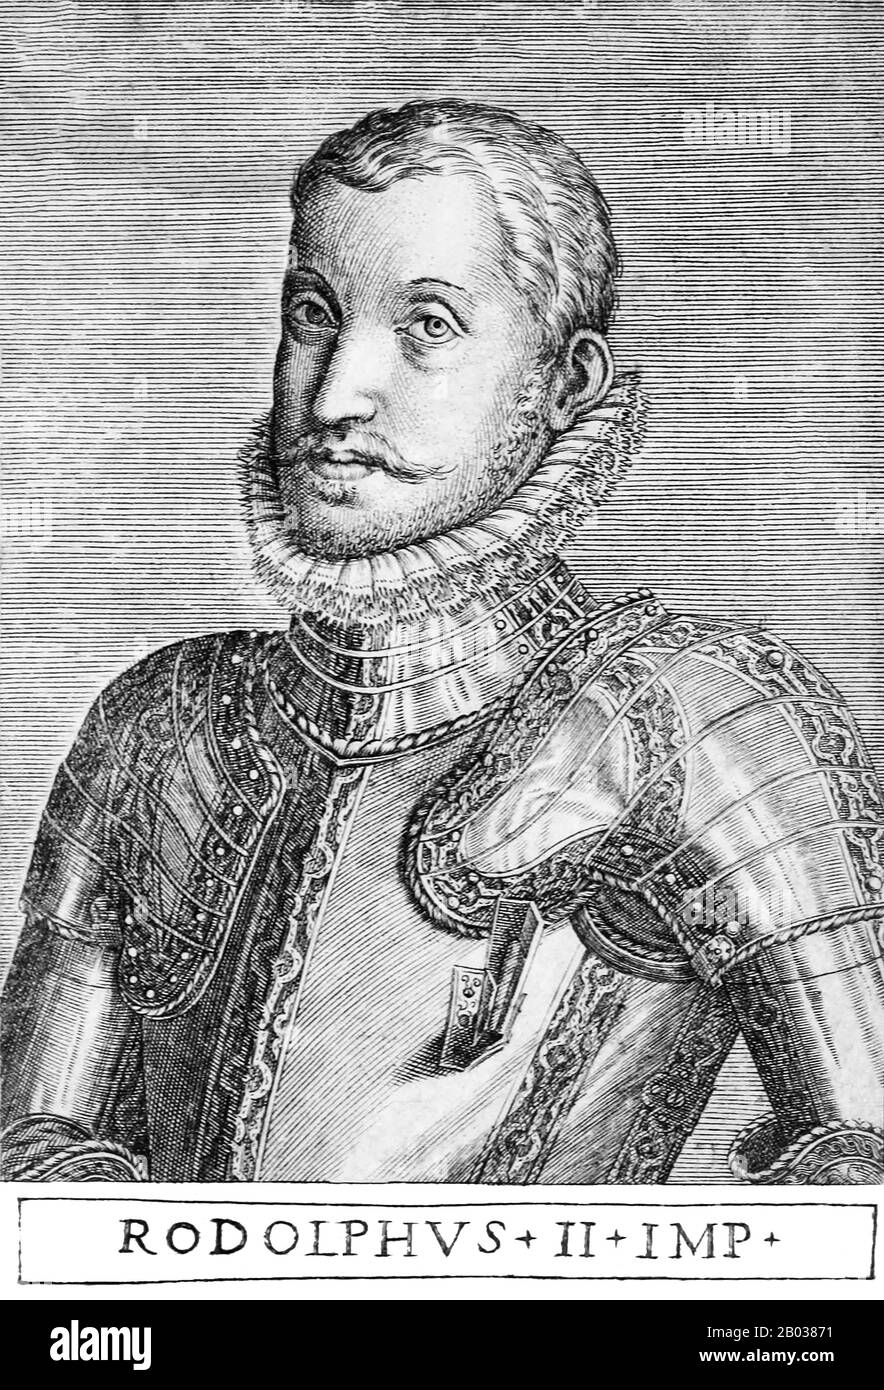 Rudolf II (1552-1612) était le fils aîné et successeur de l'empereur Maximilian II, et a passé huit années de formation dans la cour espagnole de son oncle maternel Philippe II, adoptant une manière ferme et alode typique de la noblesse espagnole plus conservatrice. Il est resté réservé et sécrétif pour le reste de sa vie, moins enclin aux affaires quotidiennes de l'État et plus intéressé par des études occultes telles que l'alchimie et l'astrologie. Rudolf est devenu roi de Hongrie et de Croatie en 1572, et au moment de la mort de son père en 1576, avait également hérité des couronnes bohémiennes, allemandes et romaines. Rudolf dangle h Banque D'Images